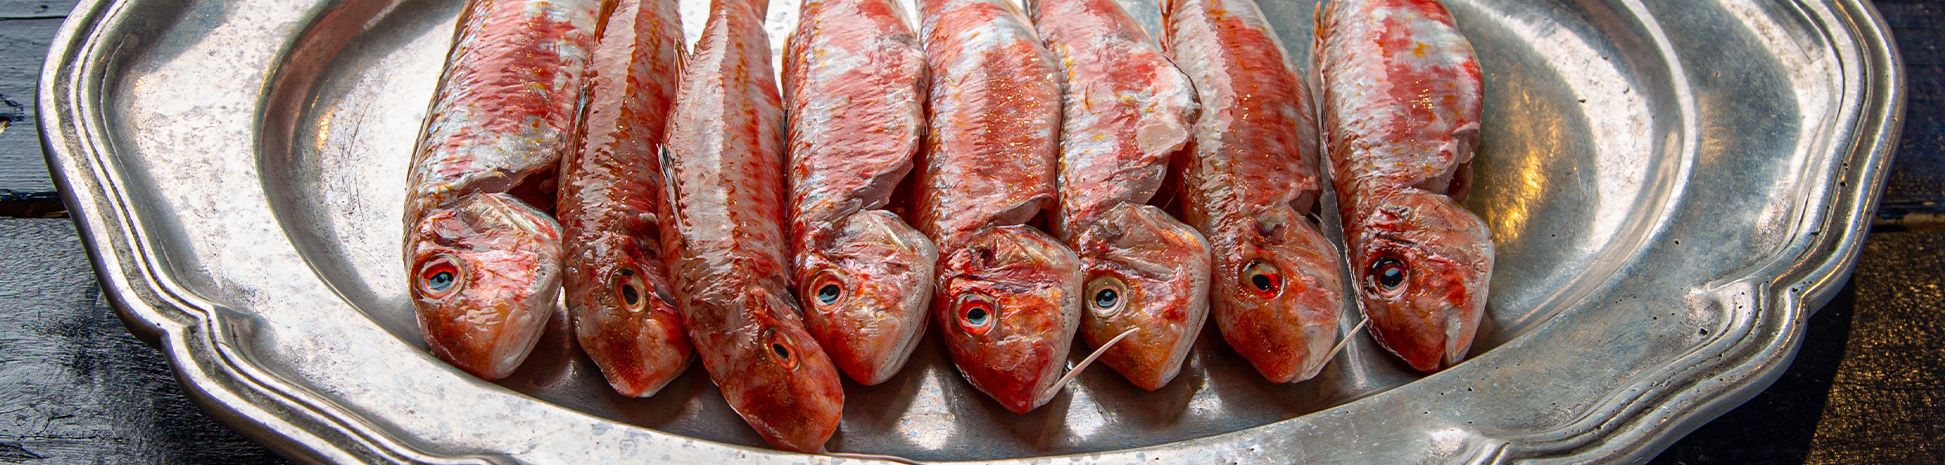 דגים ופירות ים טריים